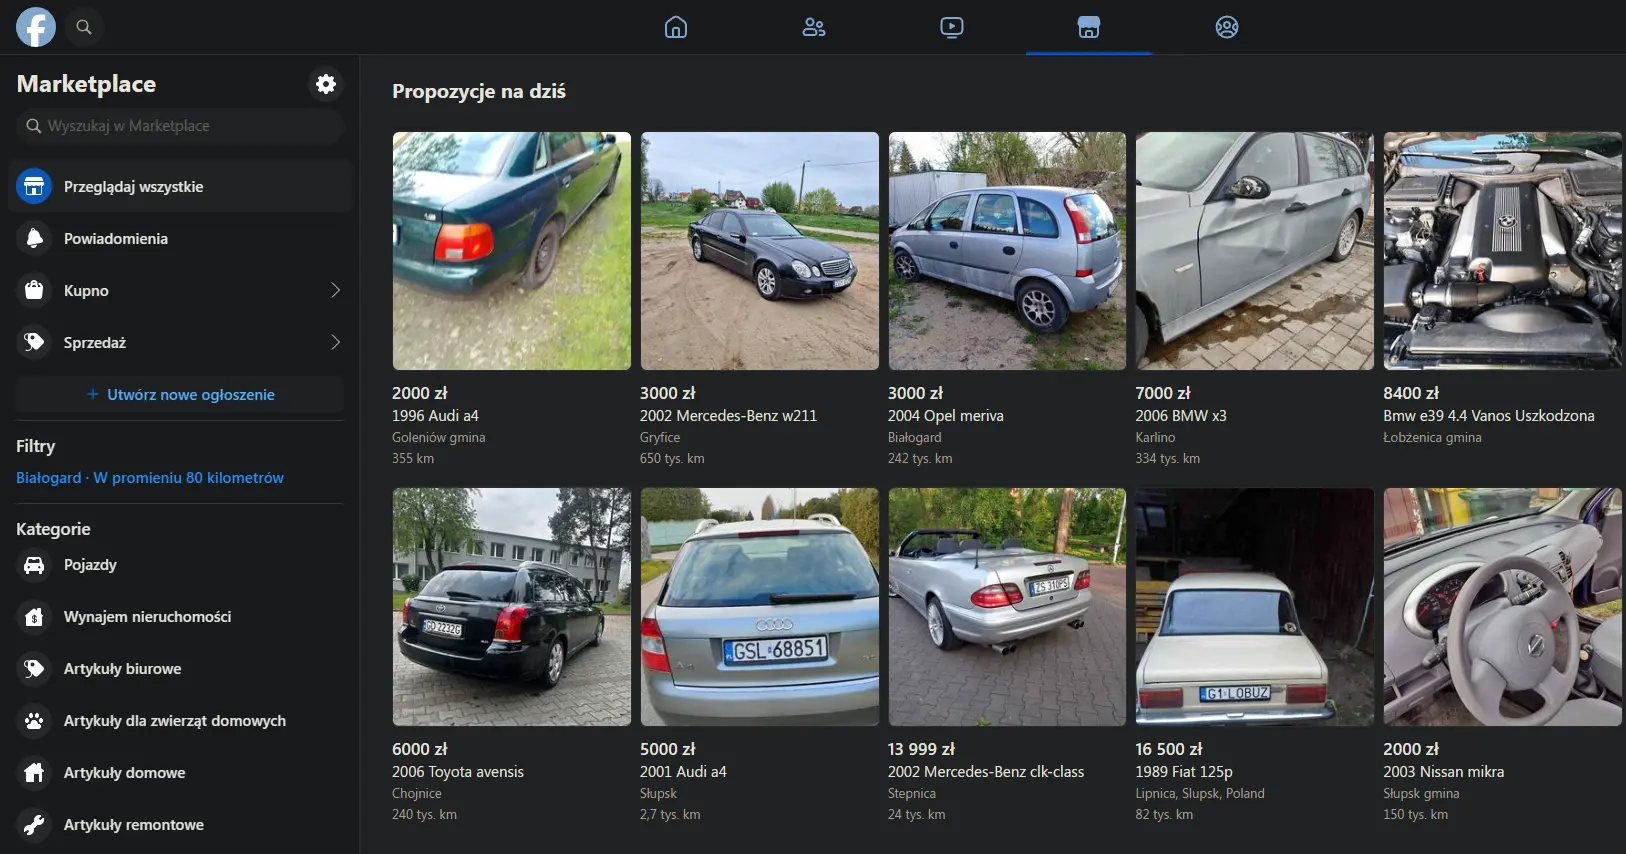 Wyszukiwanie ofert pojazdów na facebook marketplace / OLX